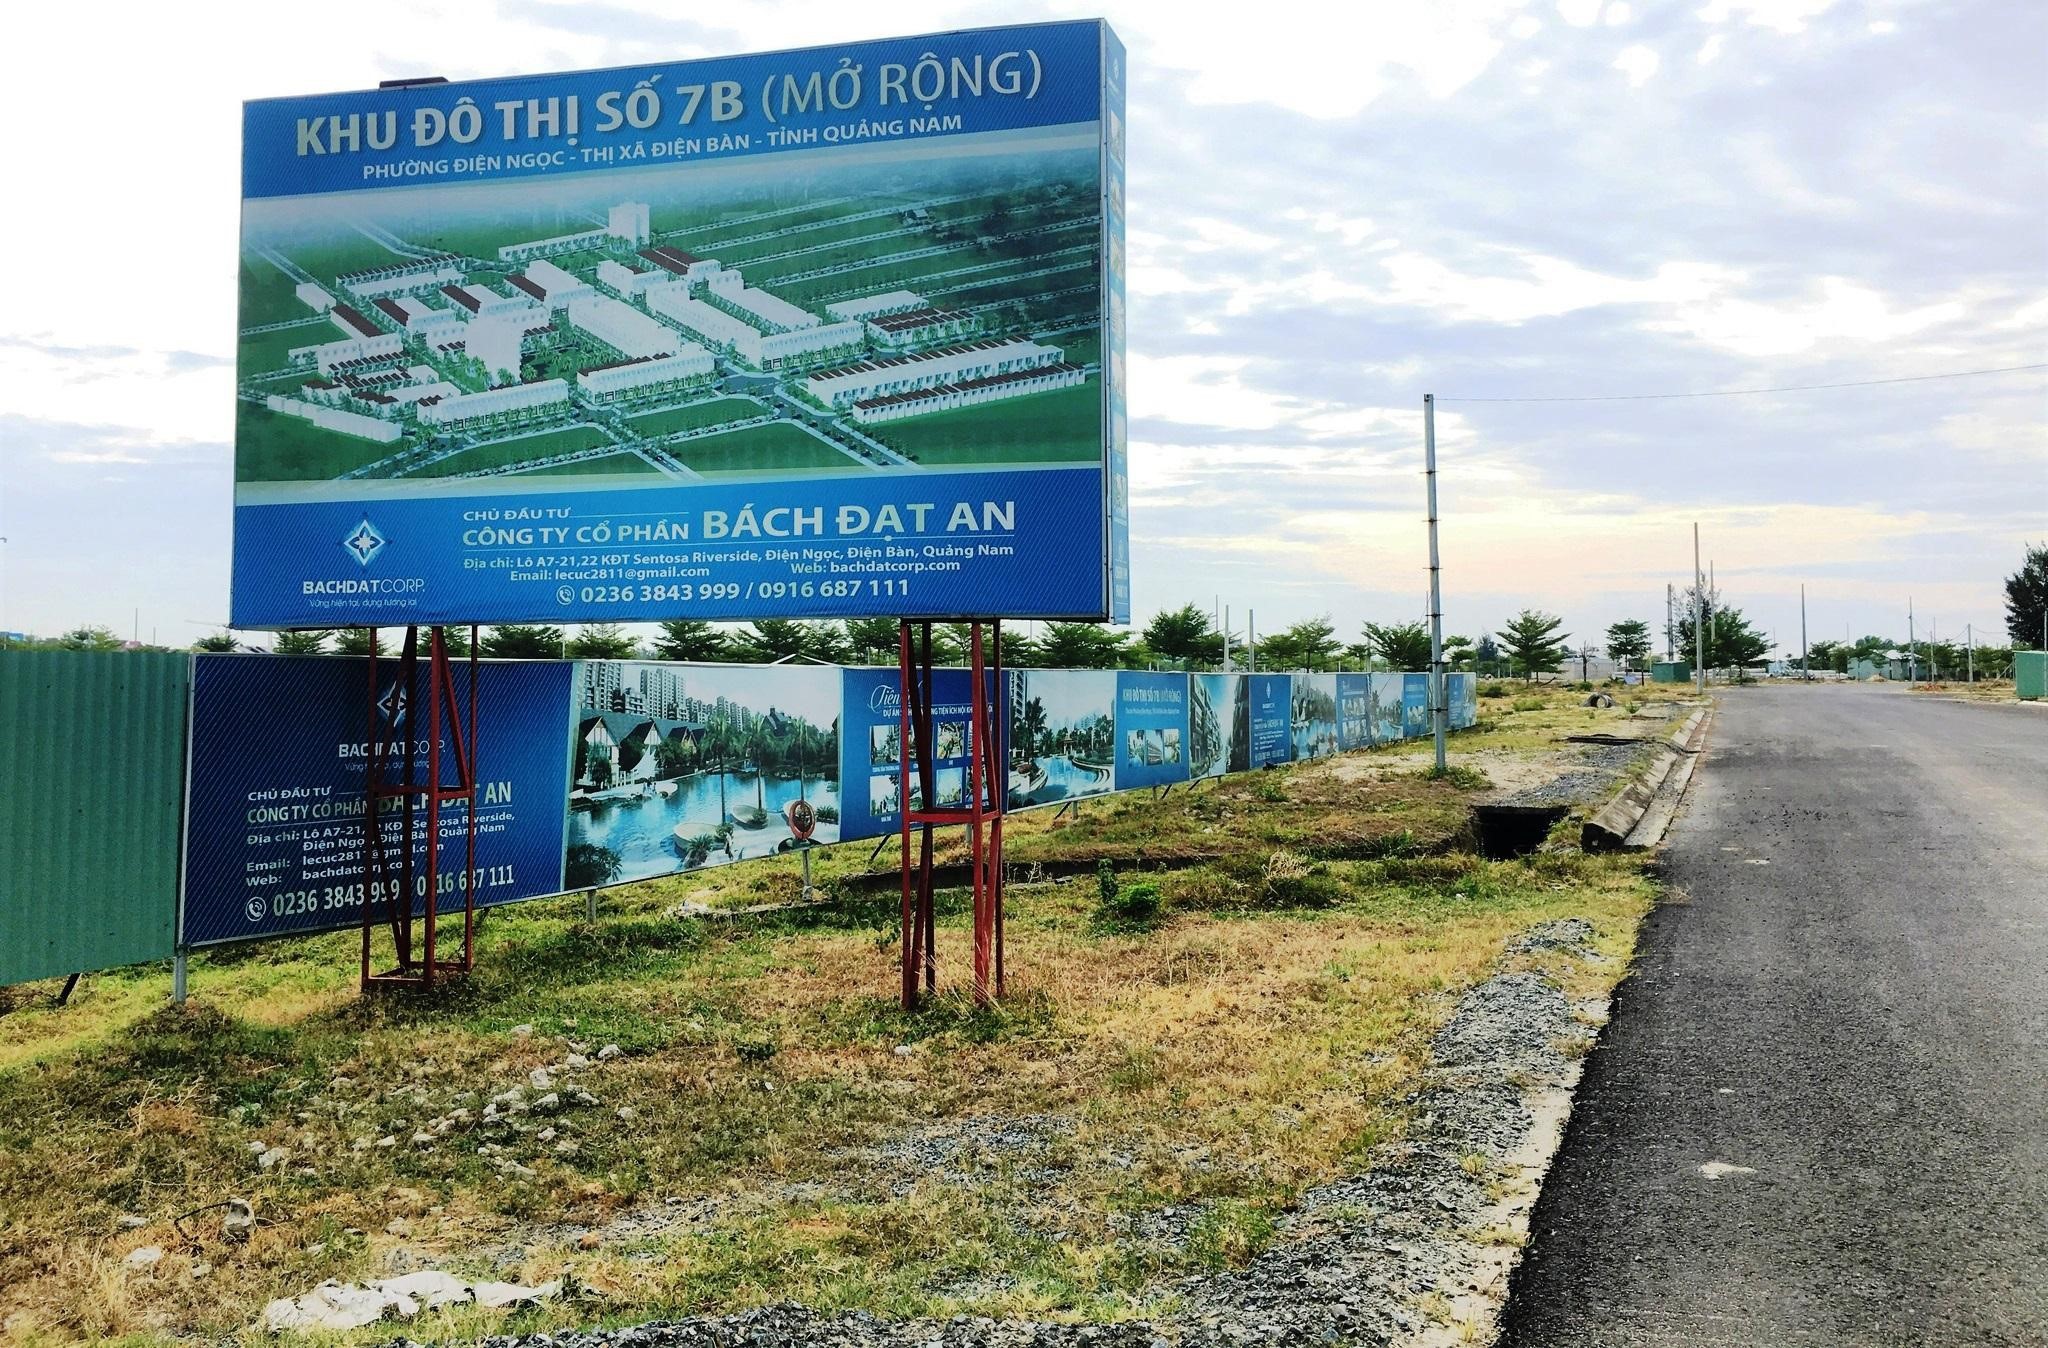 Quảng Nam: Loạt dự án của công ty Bách Đạt An bị đưa vào tầm ngắm giờ ra sao?